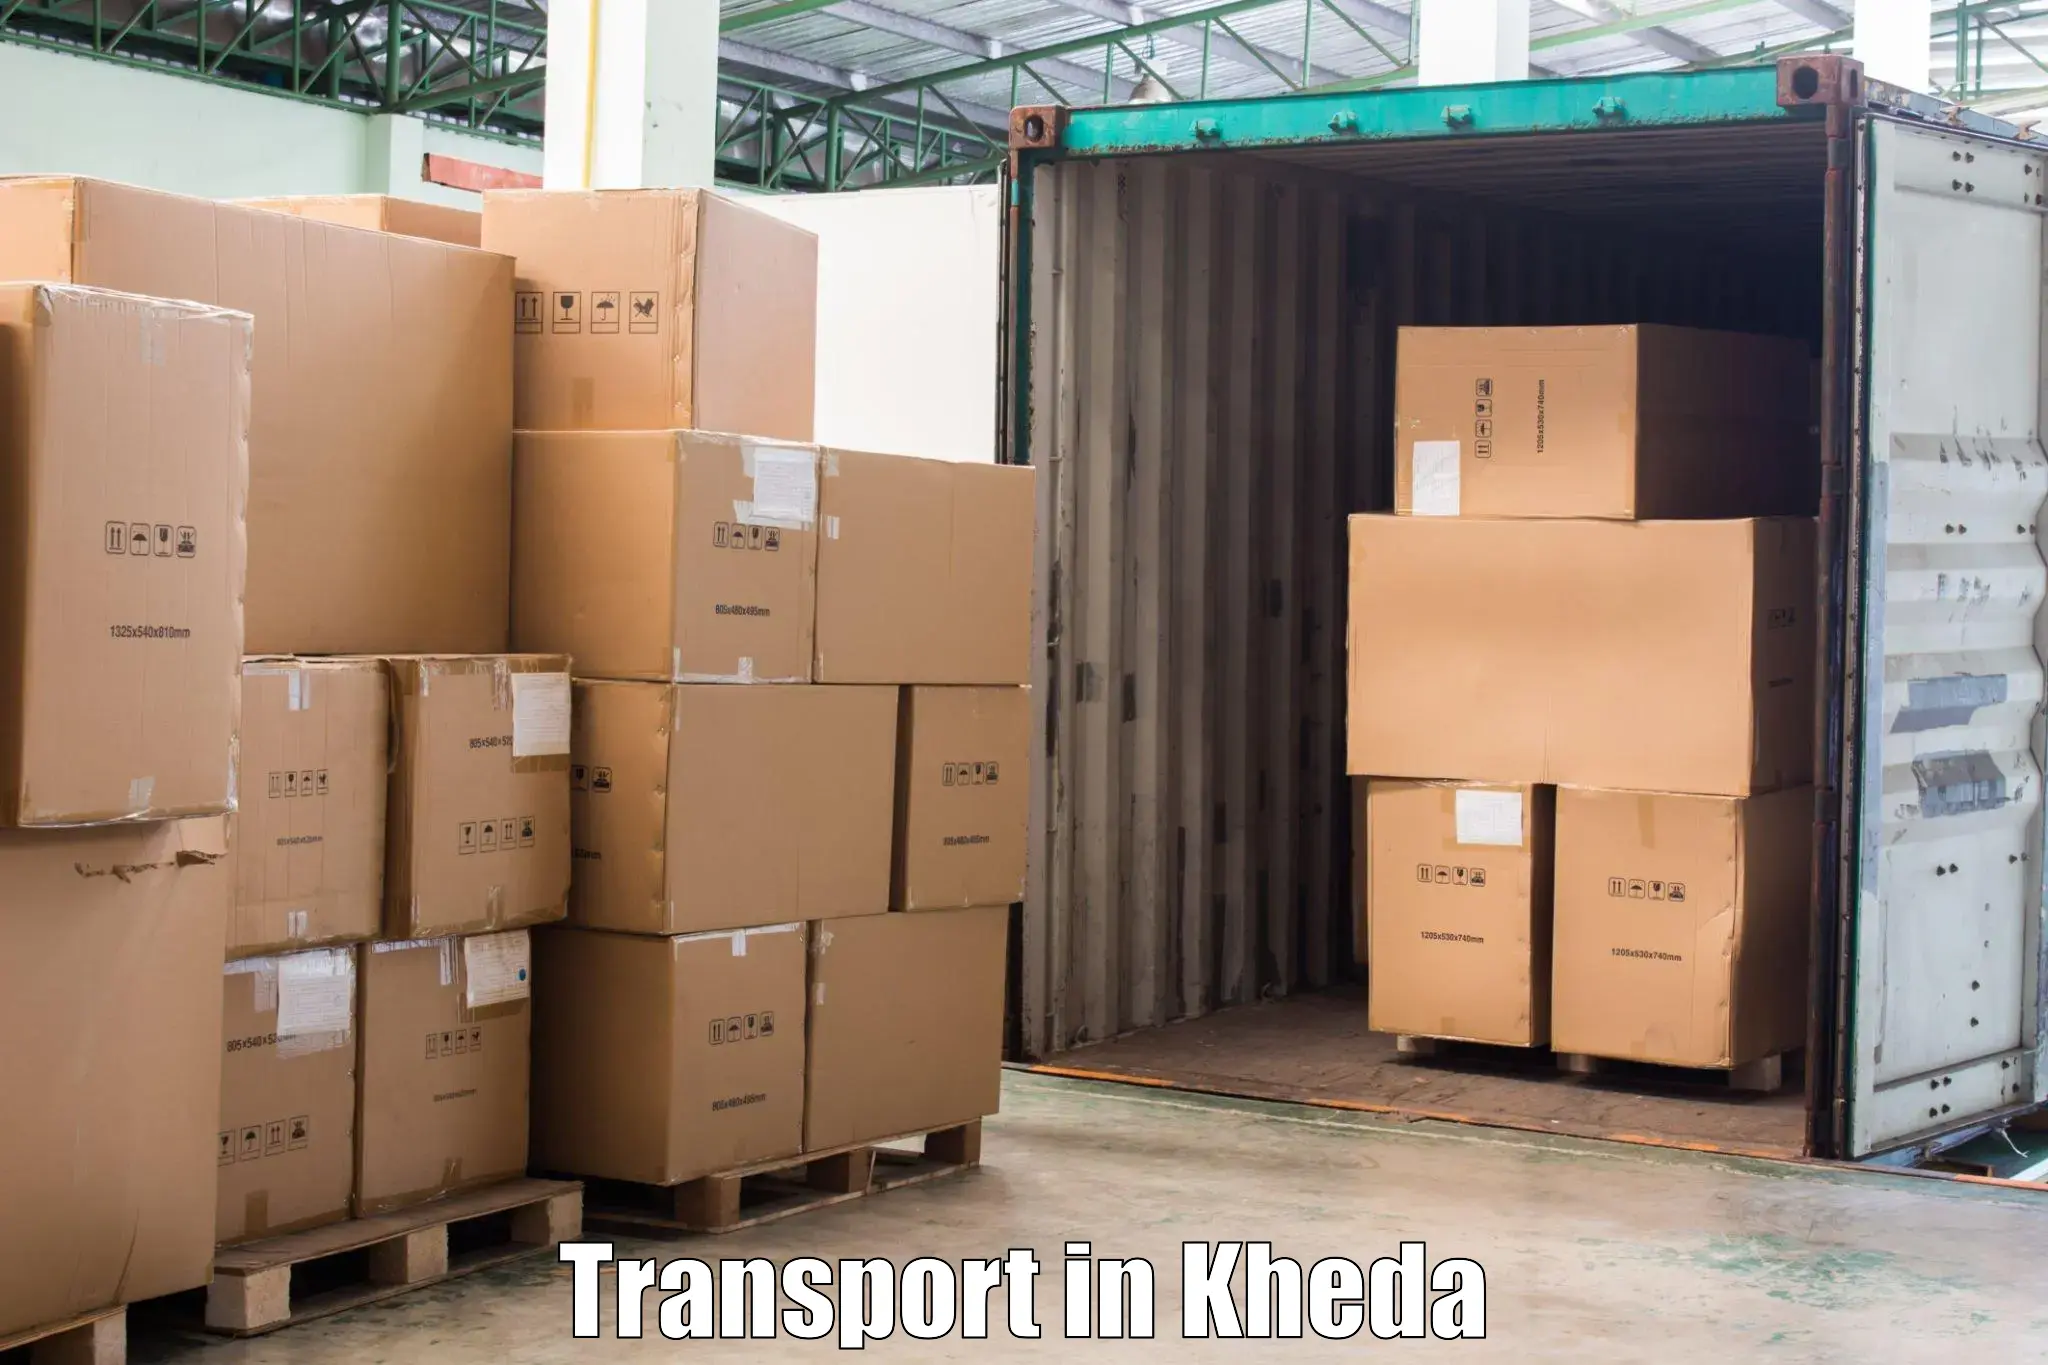 Vehicle parcel service in Kheda